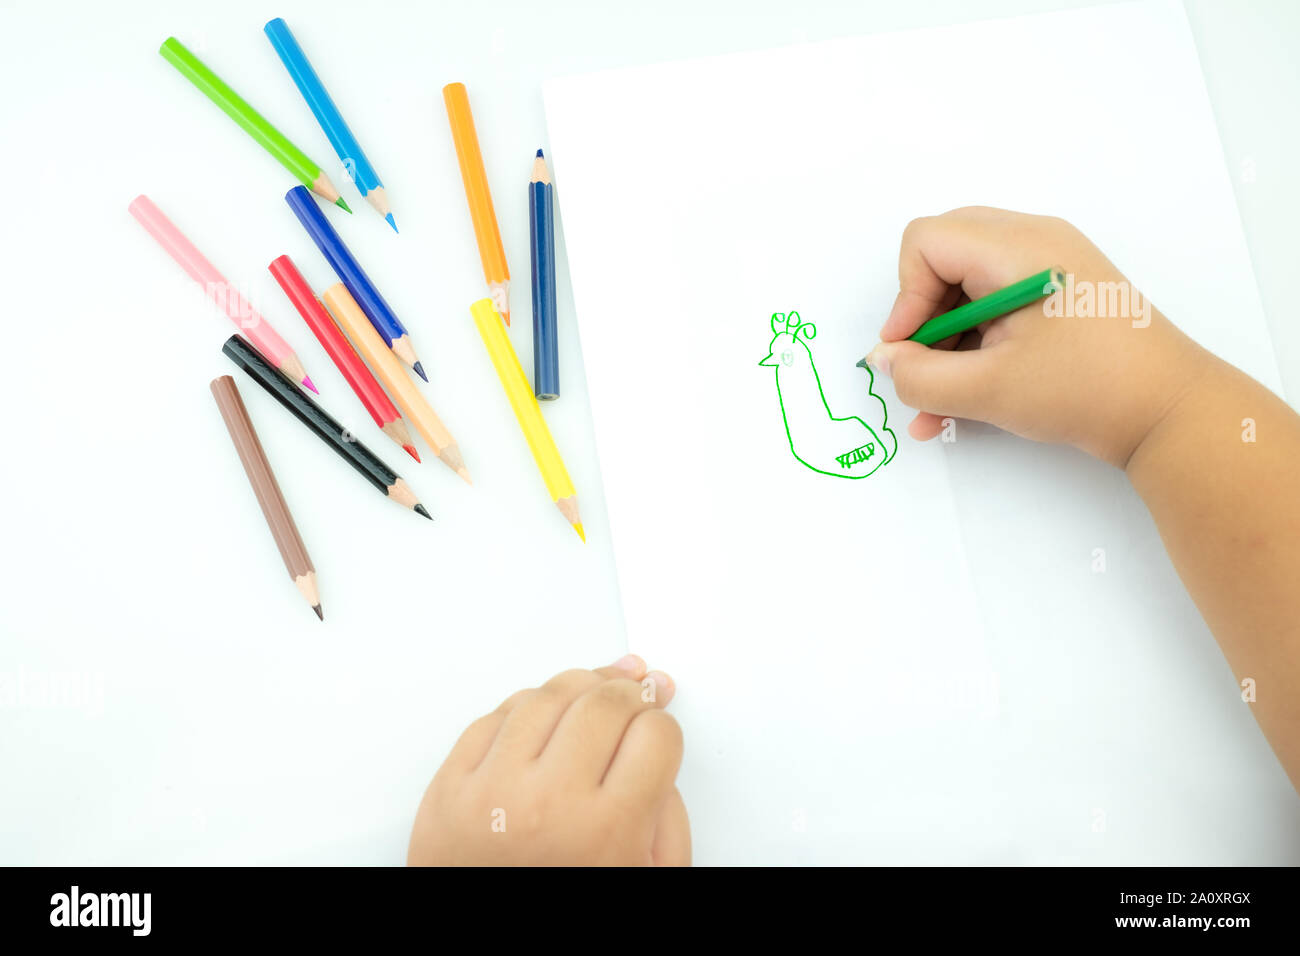 Los niños dibujar pinturas en la sala de juegos, un niño está agarrando un  lápiz en sus manos en papel y lápices de colores para dibujar en la mesa,  la mano Kids